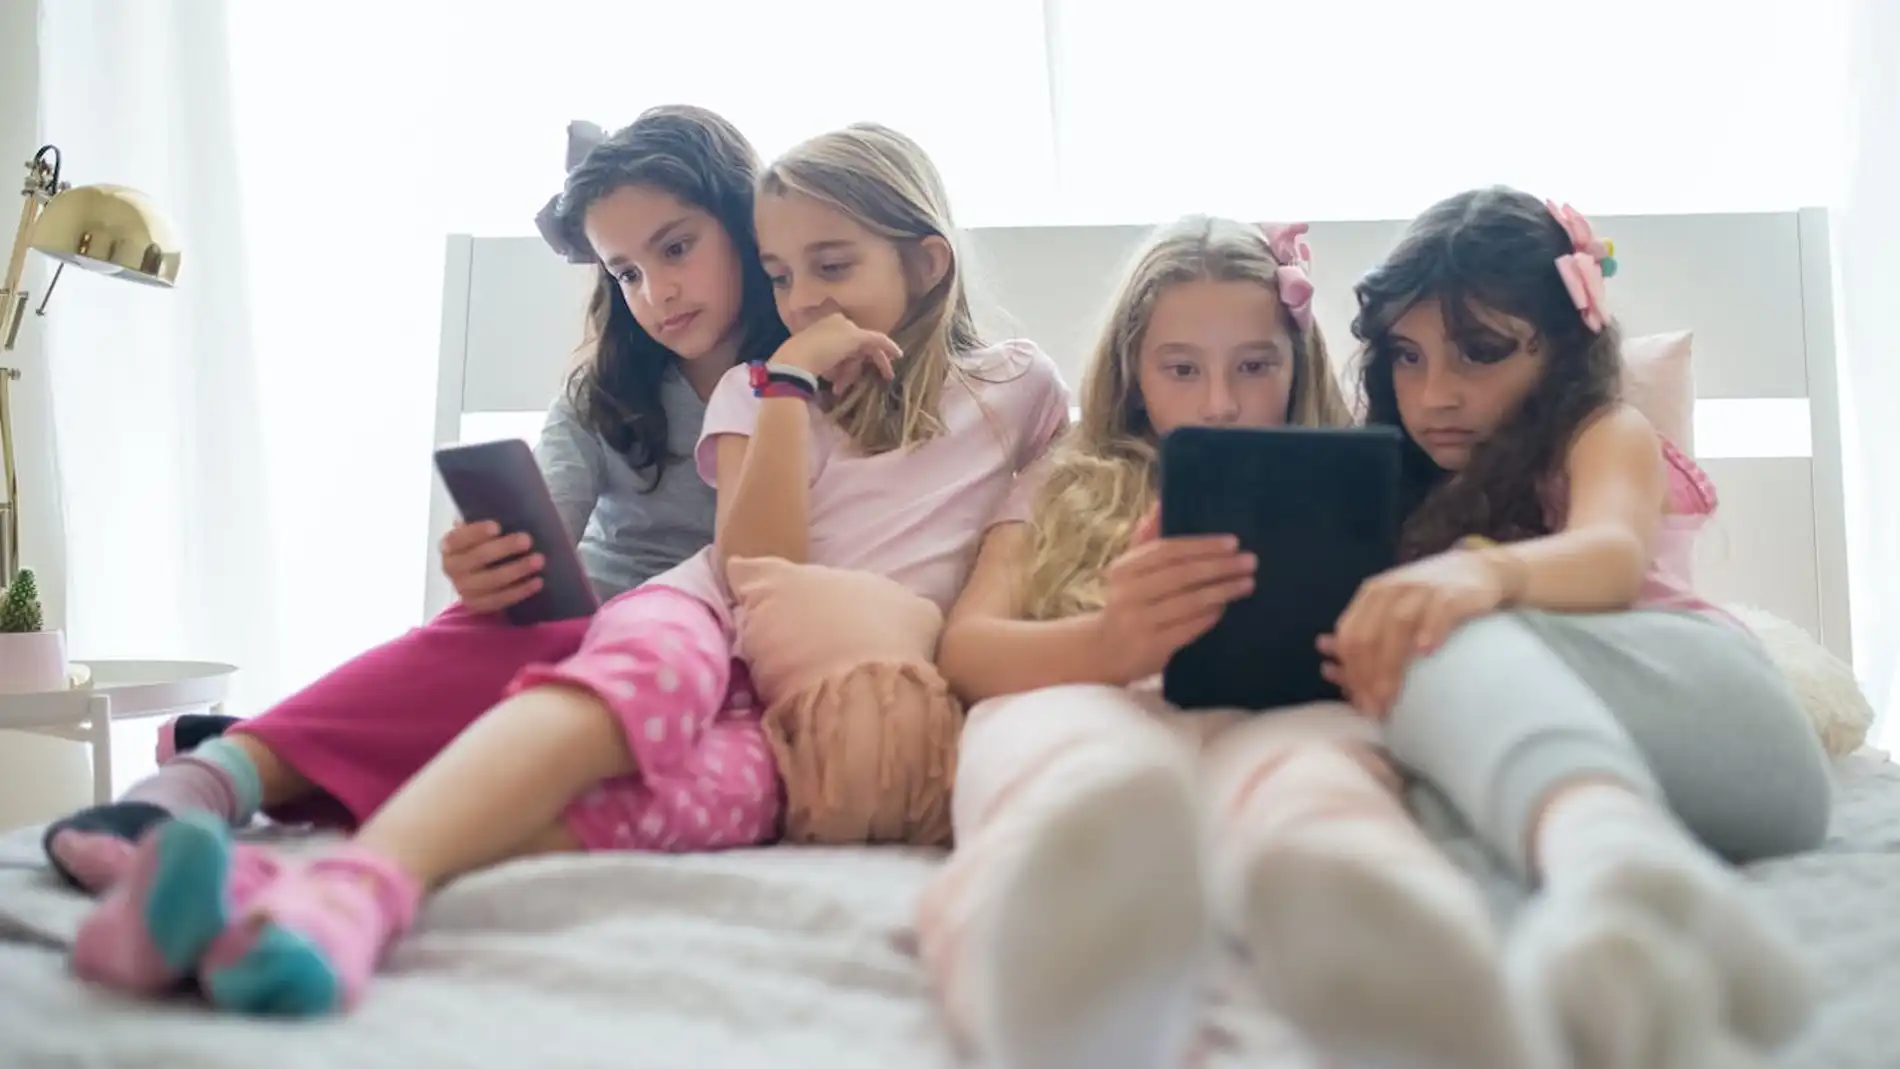 Desafíos digitales en la adolescencia: ¿Prohibir o acompañar el uso del móvil?